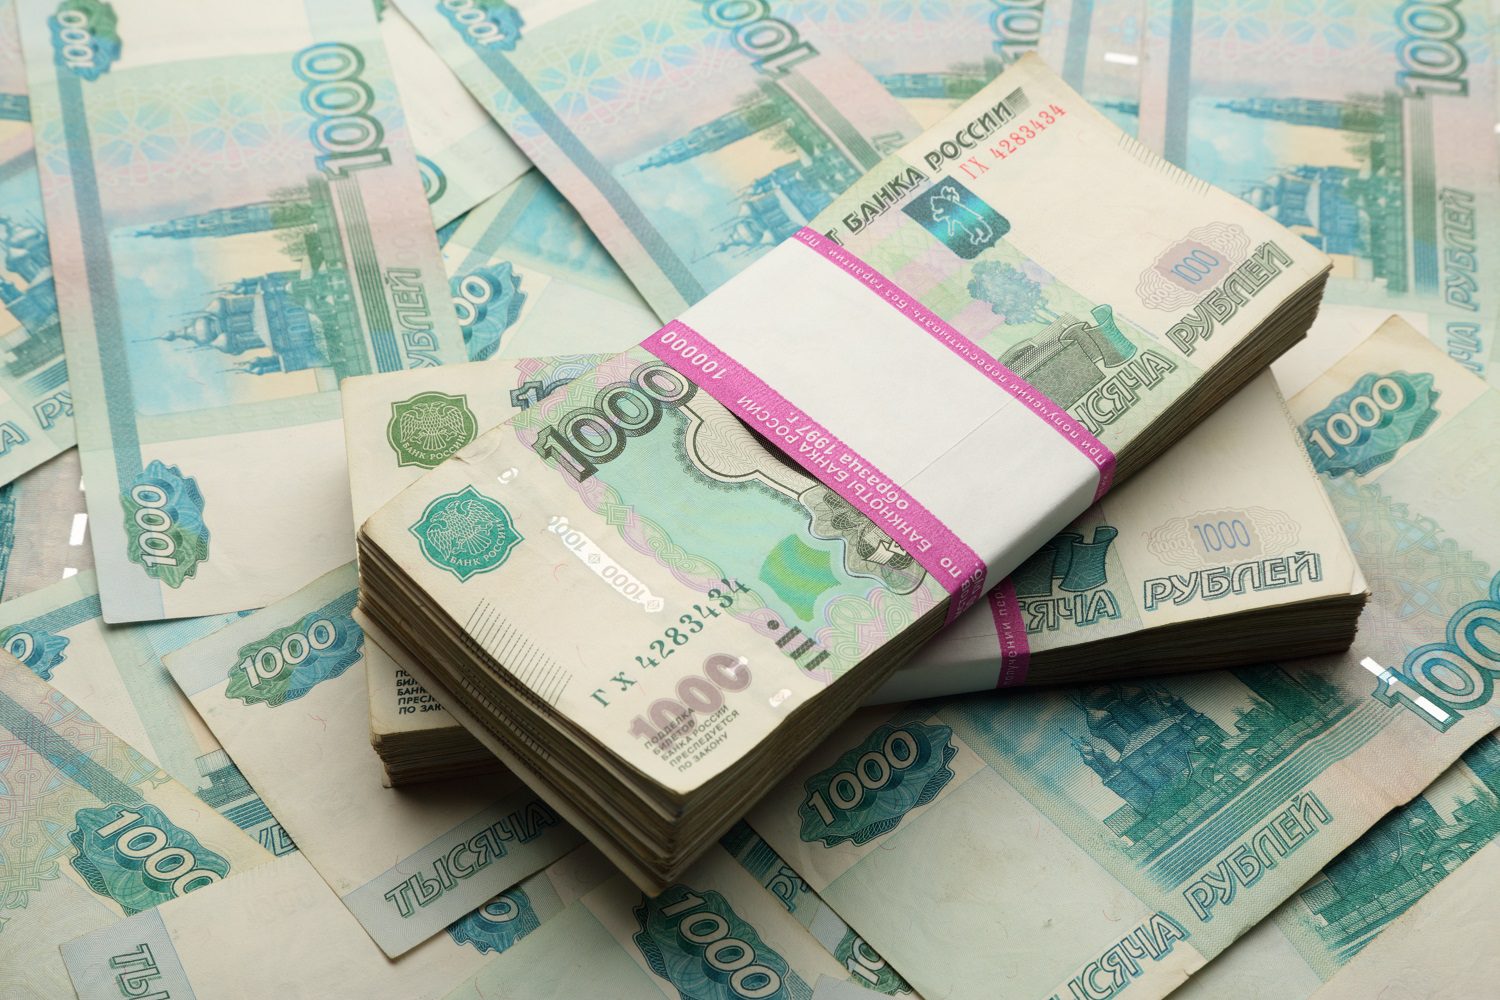 Dos fajos de billetes de 1.000 rublos rusos encima de otro montón de billetes perdidos.